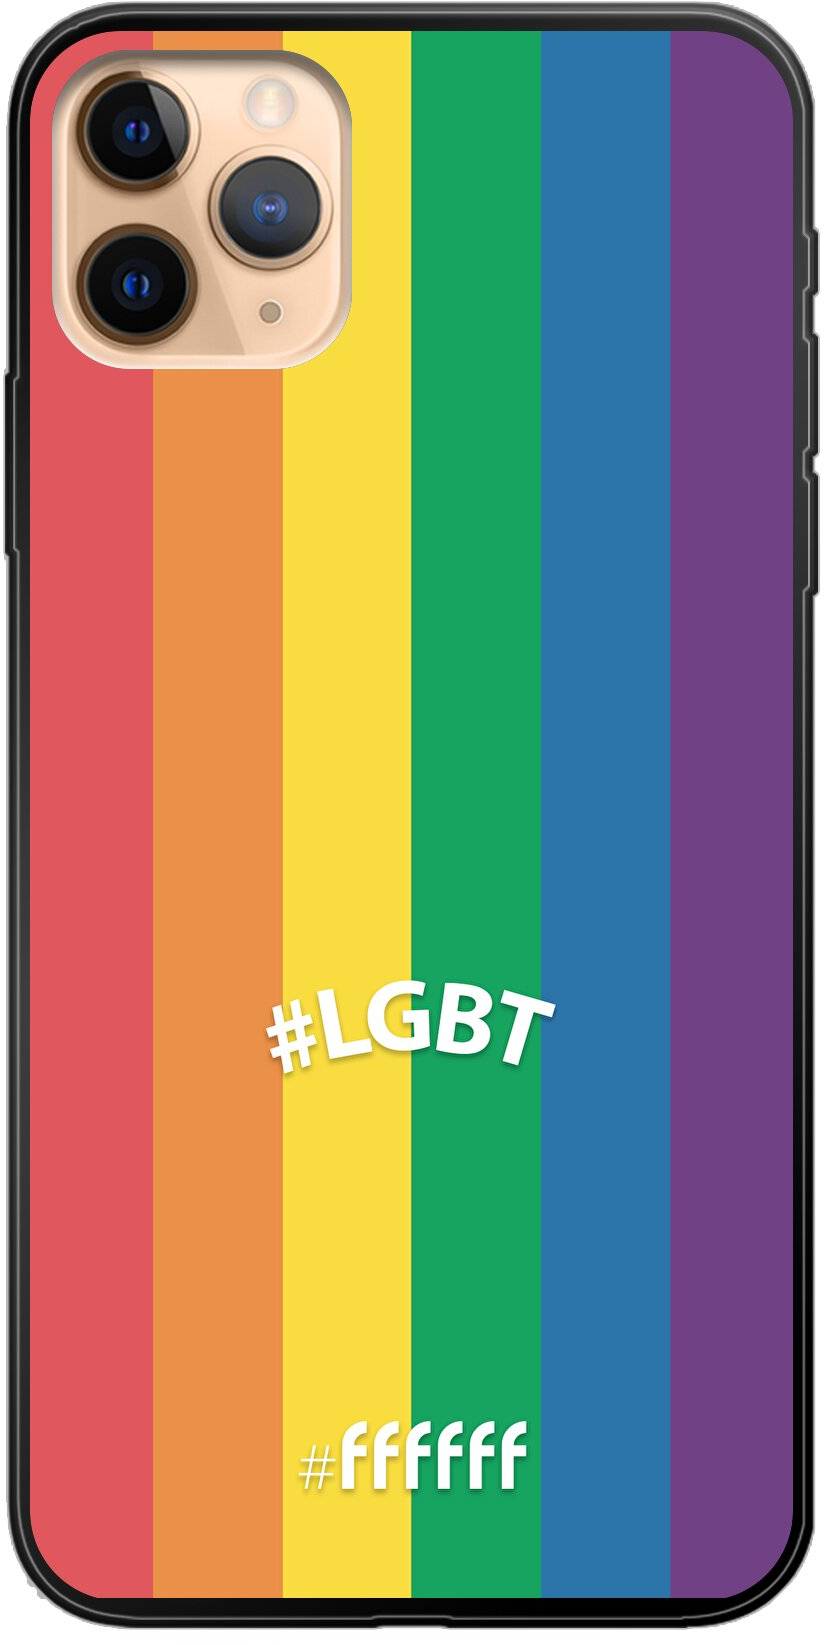 #LGBT - #LGBT iPhone 11 Pro Max